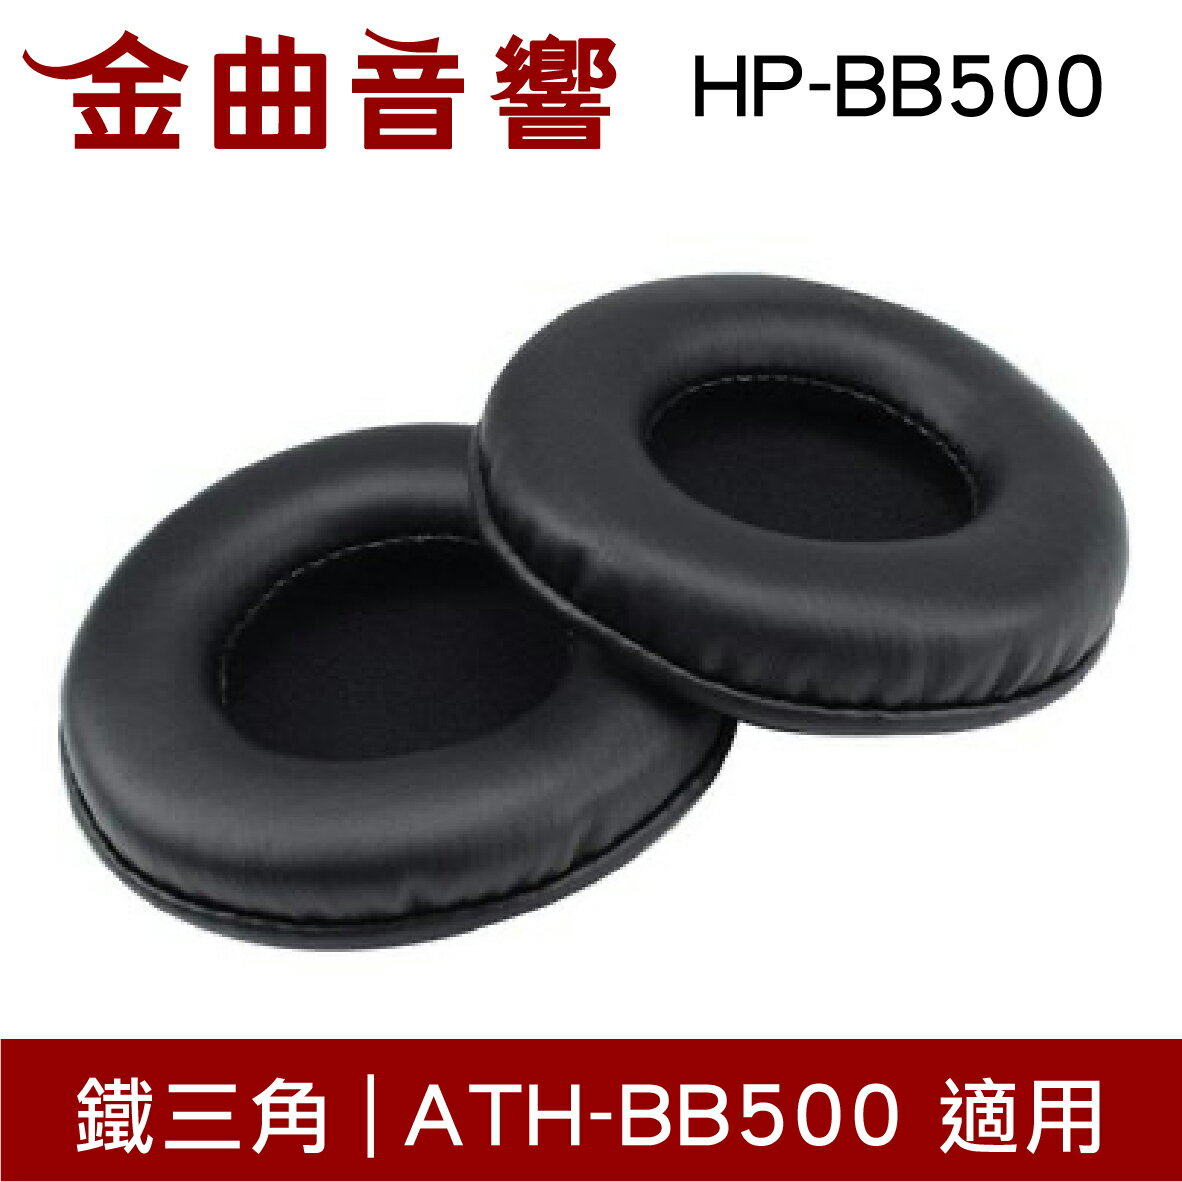 鐵三角 HP-BB500 替換耳罩 一對 ATH-BB500 適用 | 金曲音響